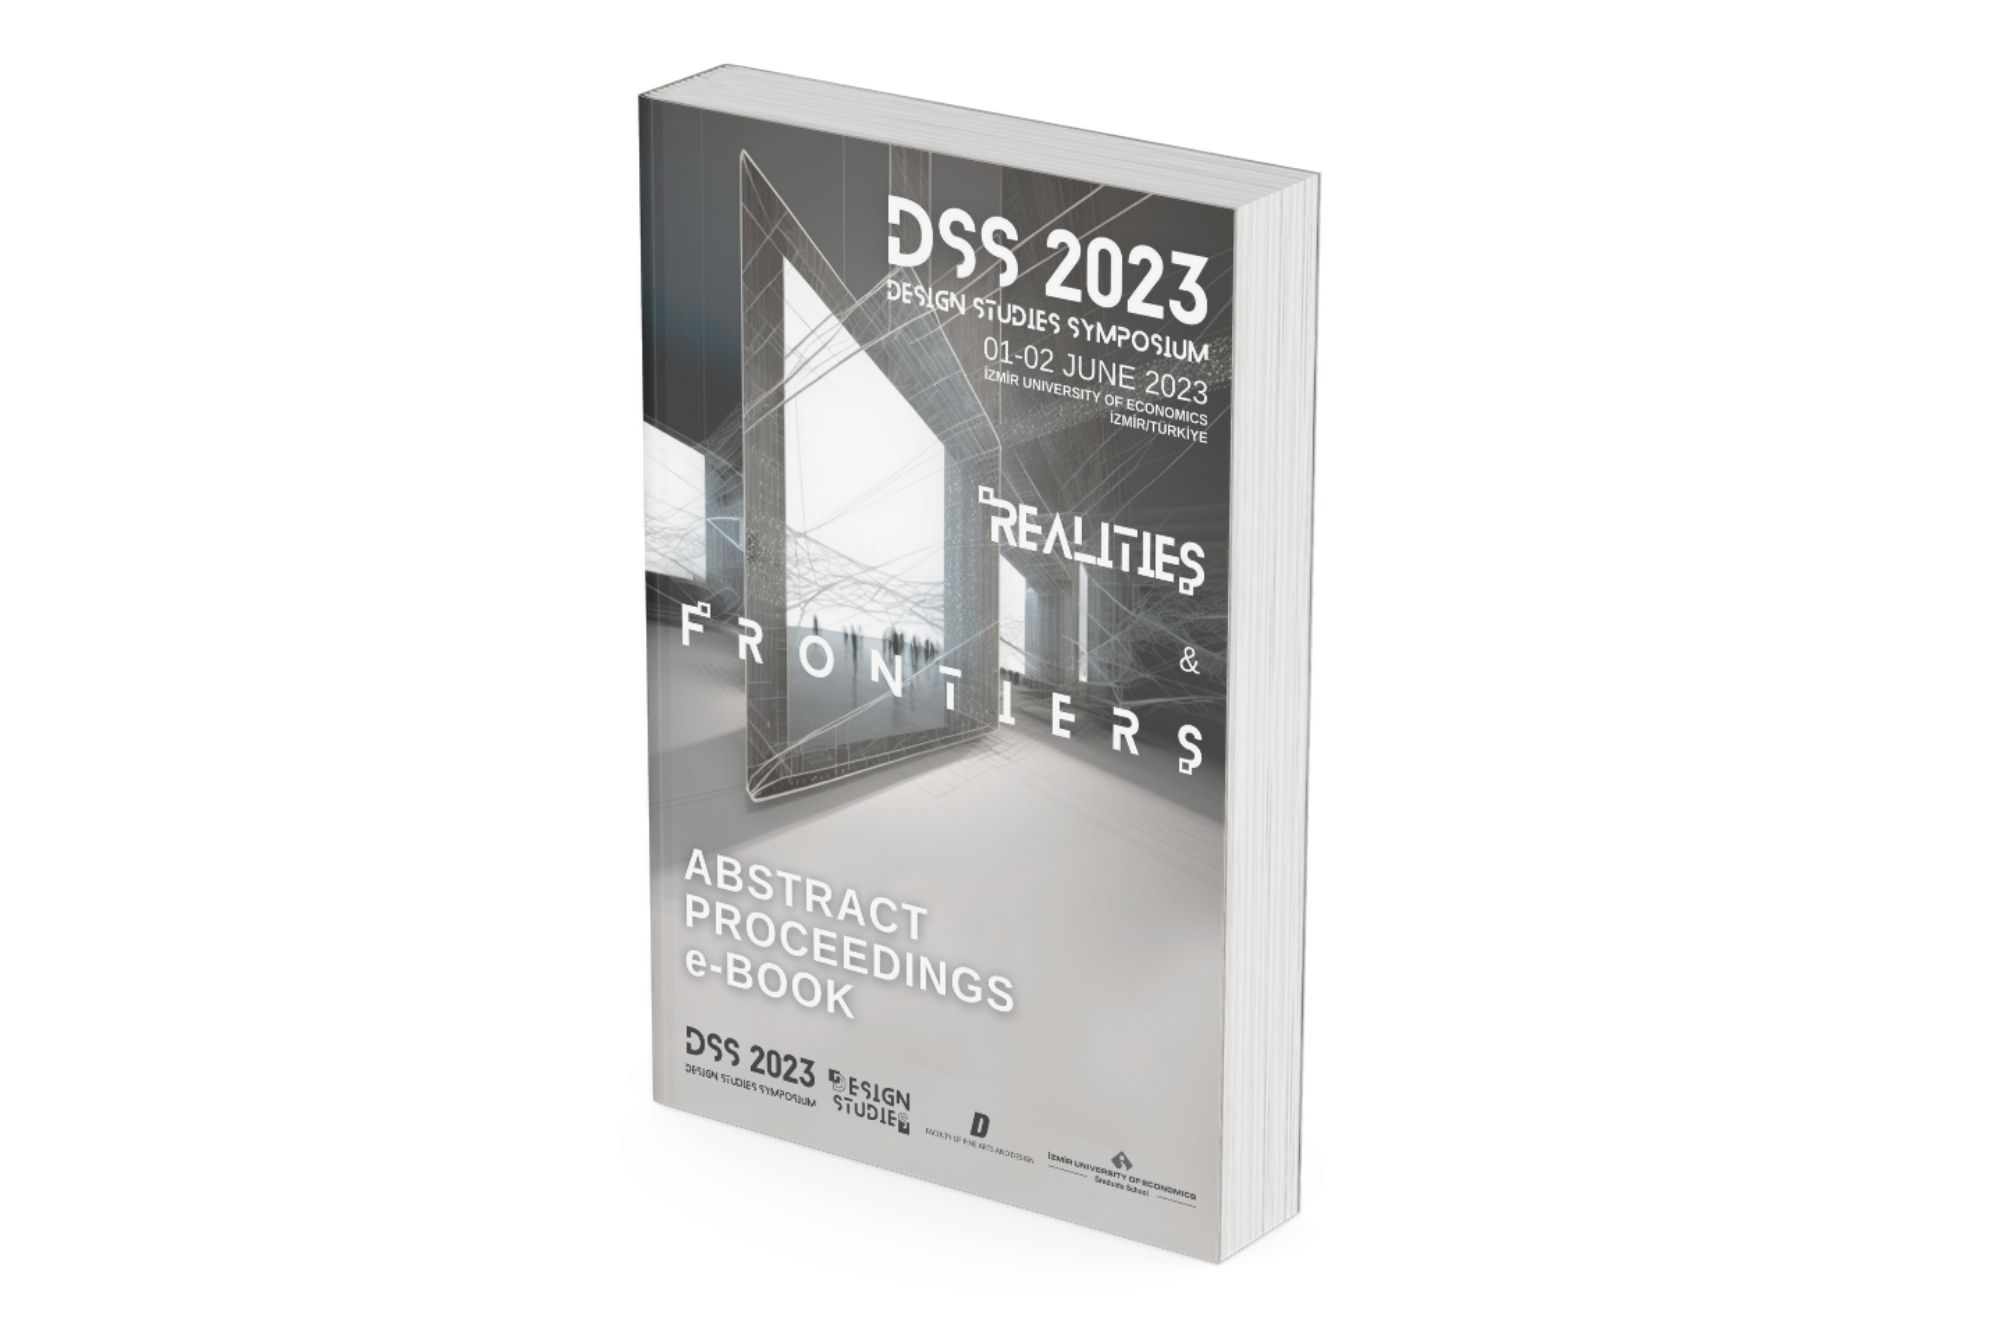 Tasarım Çalışmaları Sempozyum 2023 Konferans Bildirileri e-Kitabı yayında!